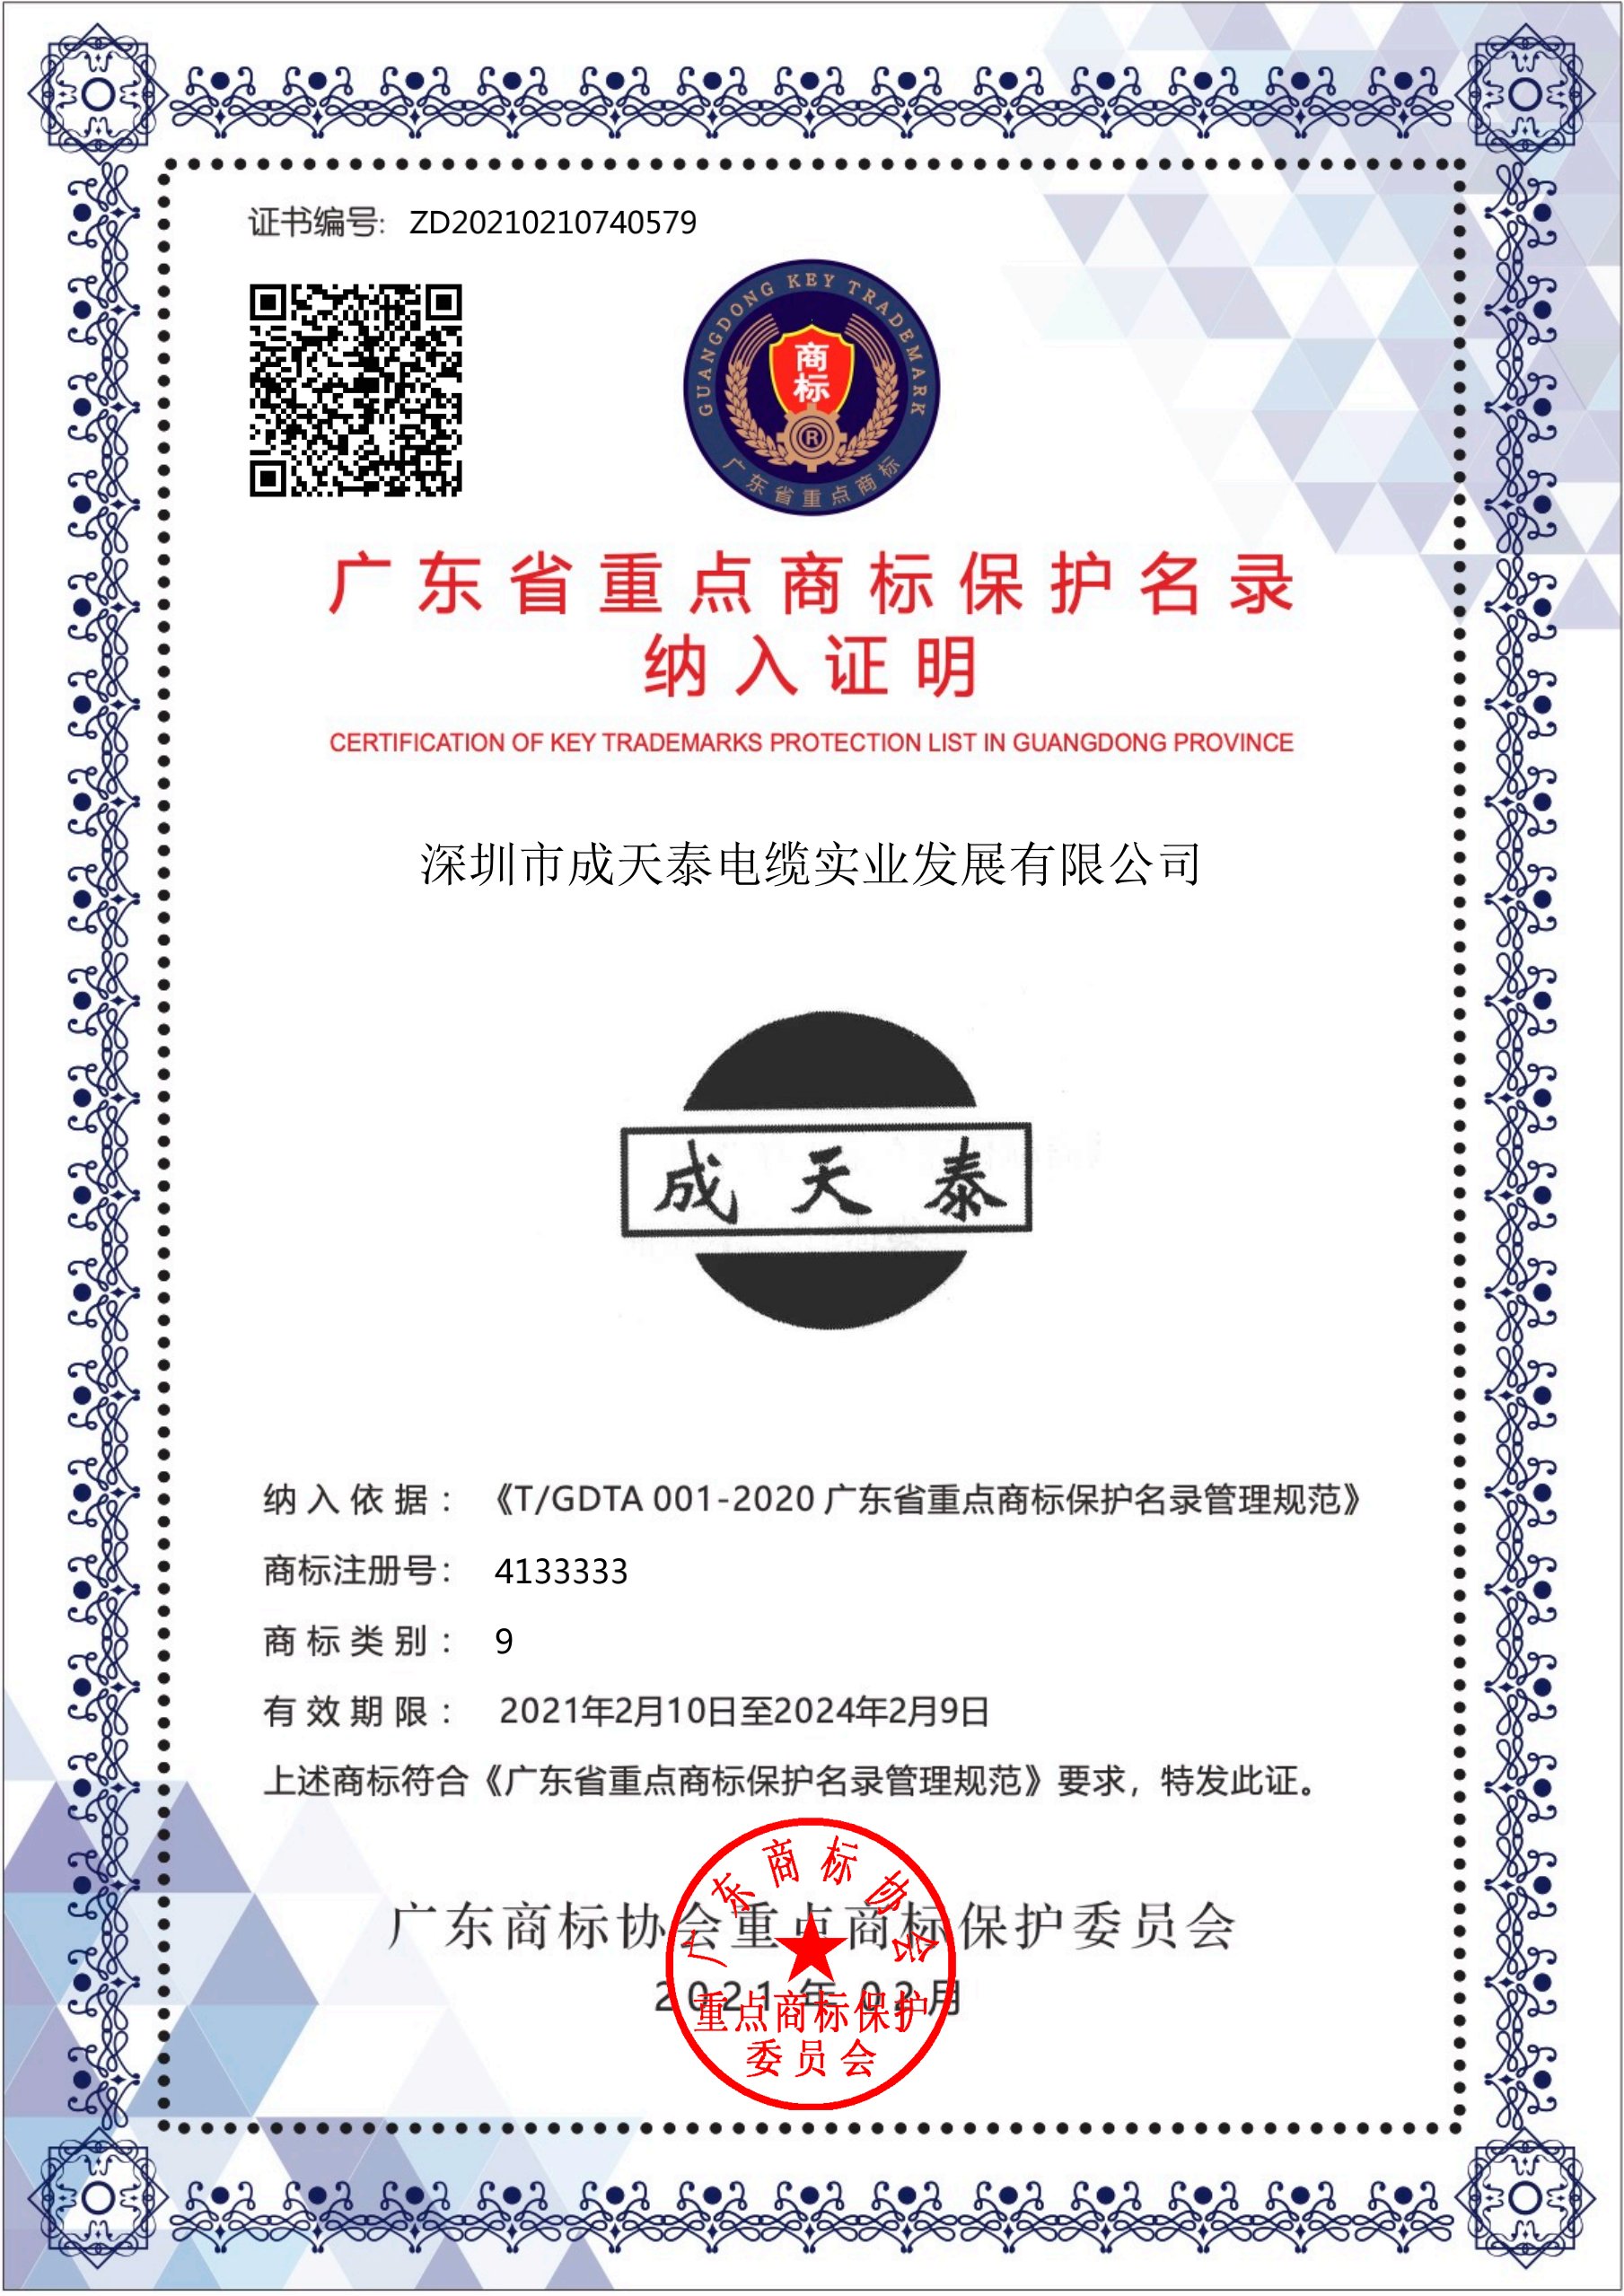 廣東省重點商標保護名錄證書.jpg